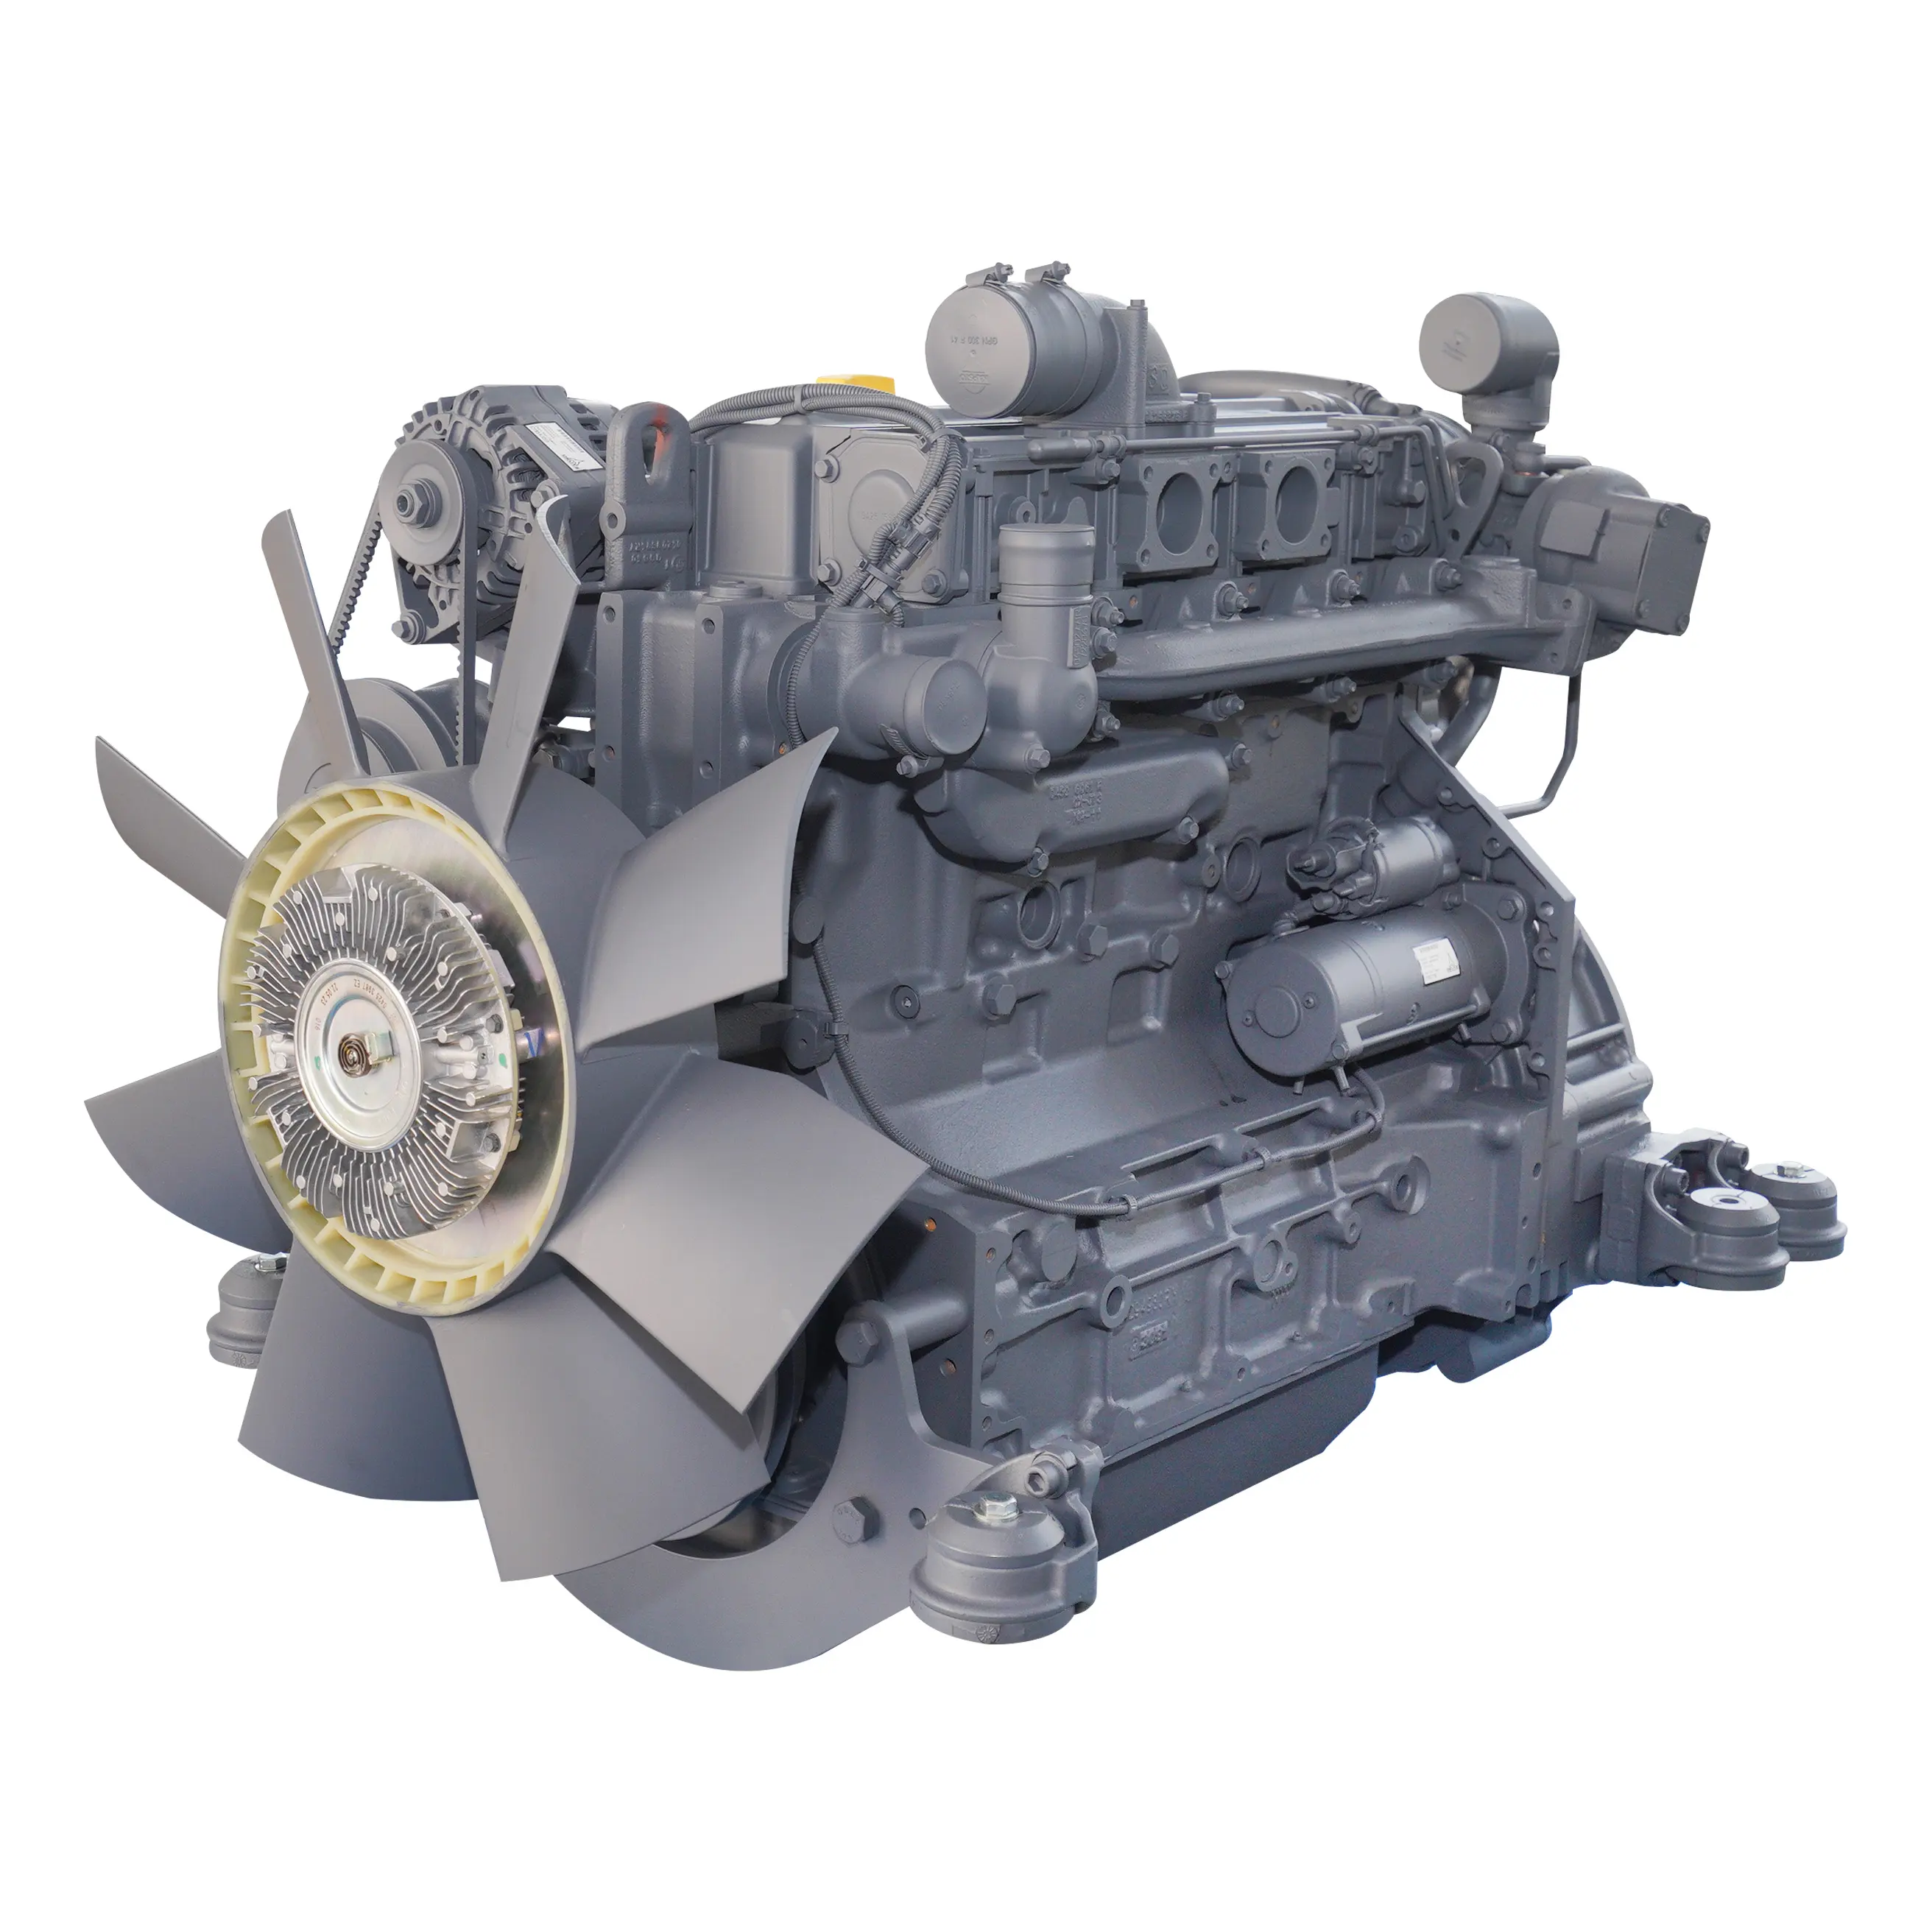 Estilo genuino 4 cilindros BF4M1013EC Deutz Motores Motor diésel para maquinaria de construcción